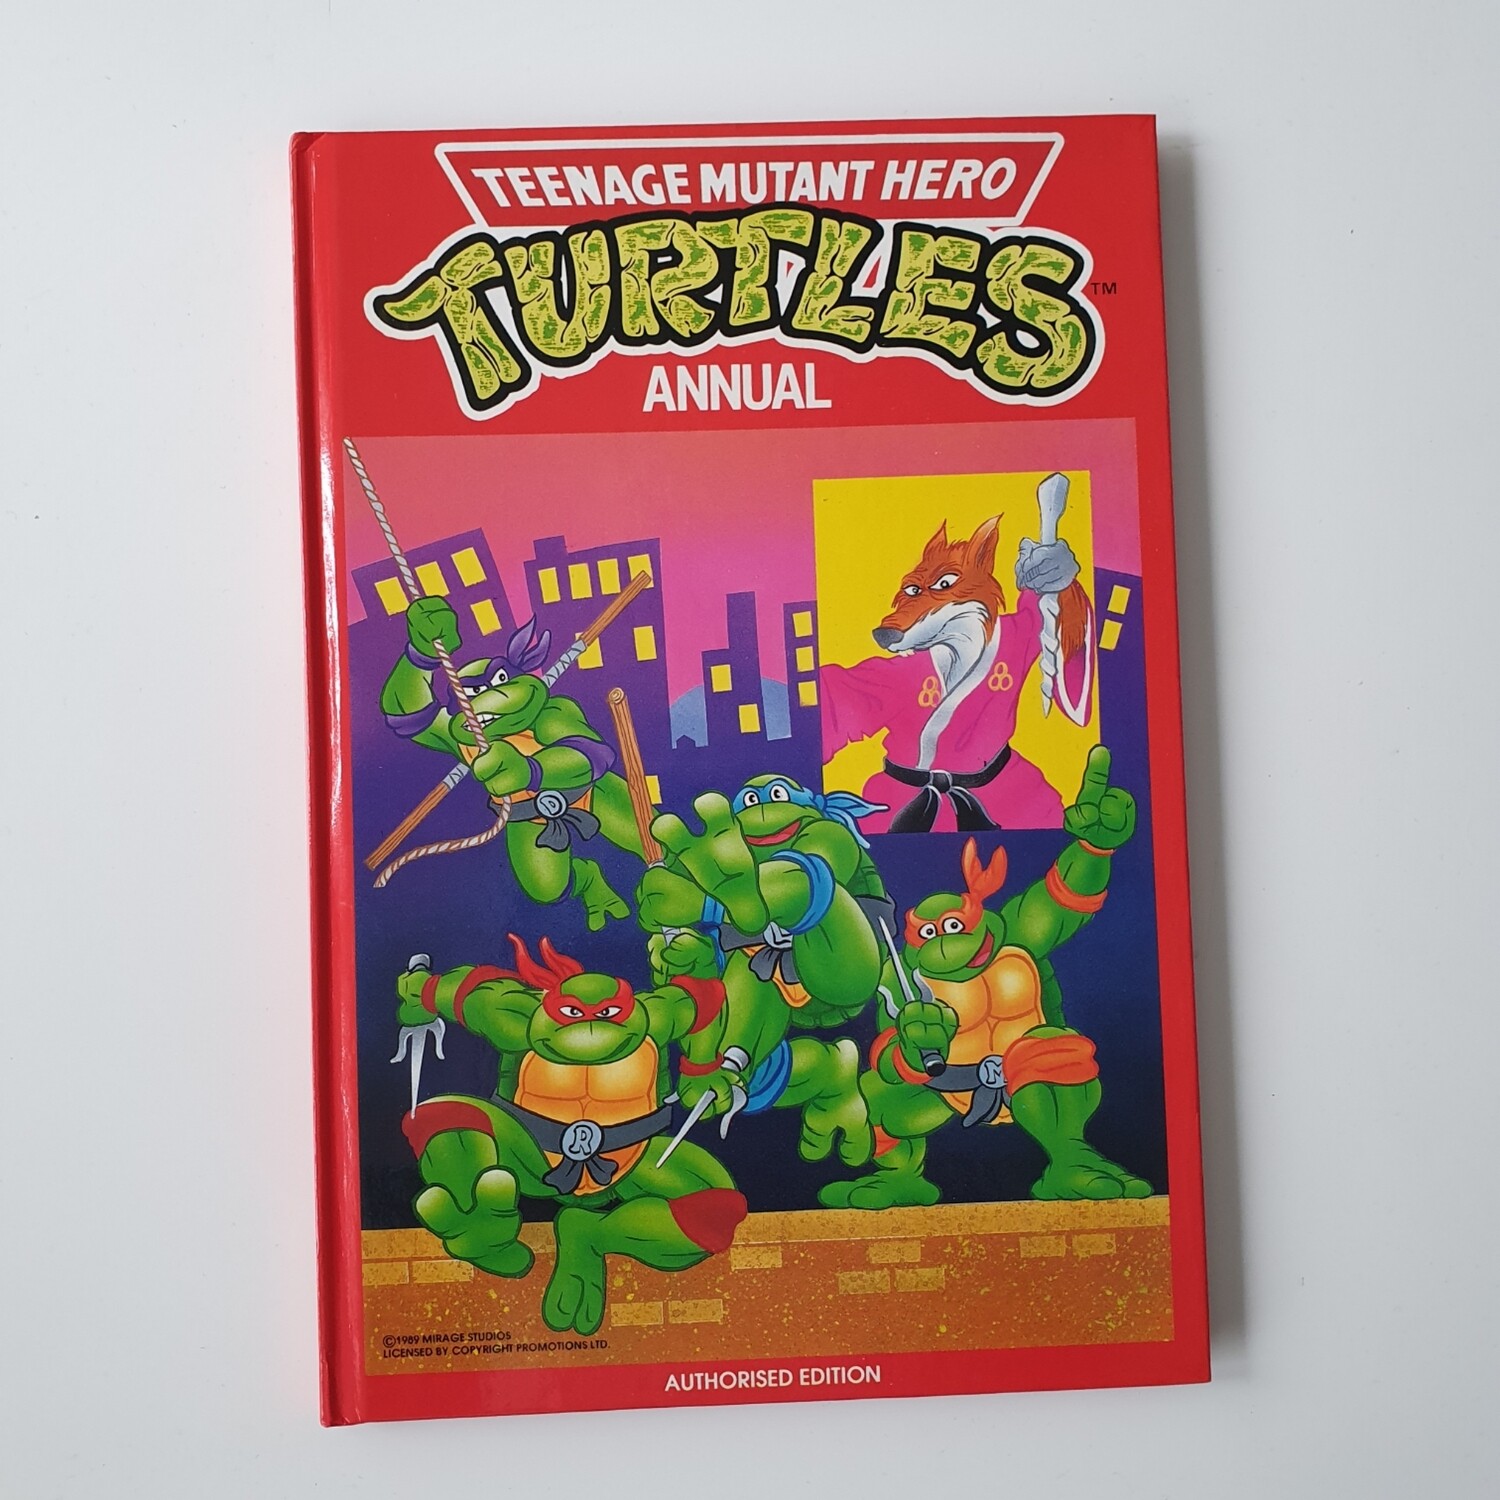 Teenage Mutant Hero Turtles 1989